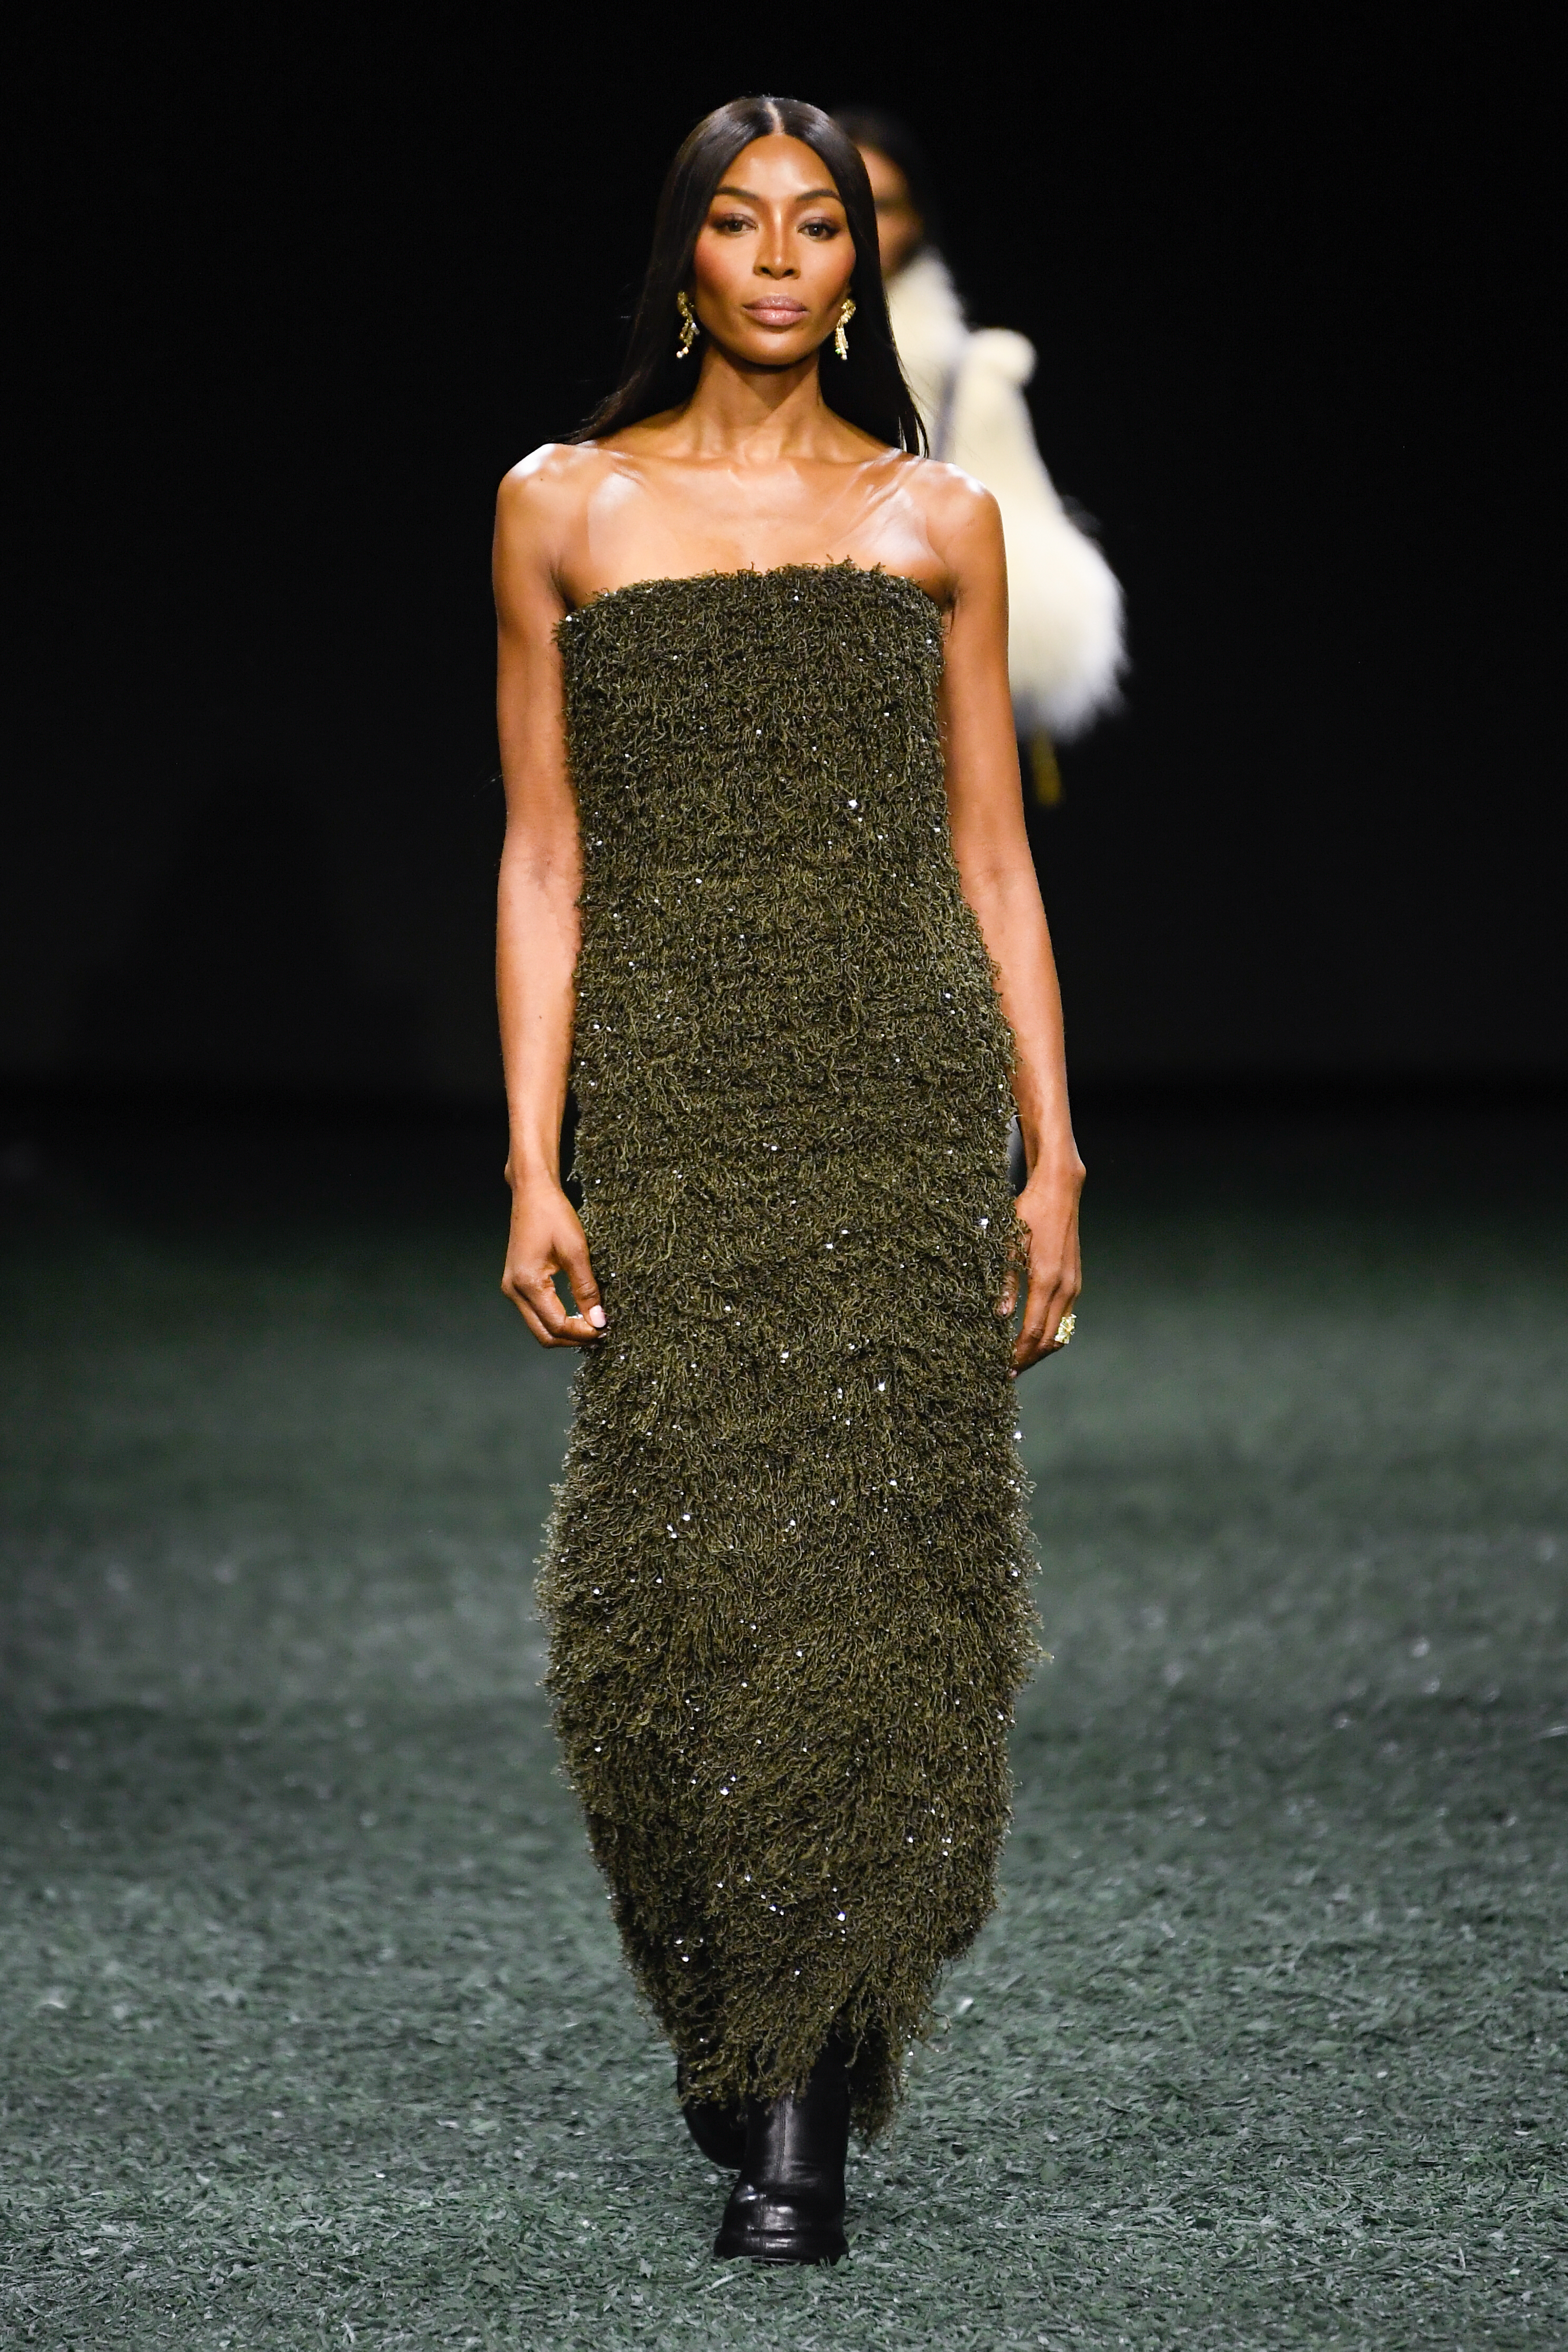 Naomi Campbell walked the runway